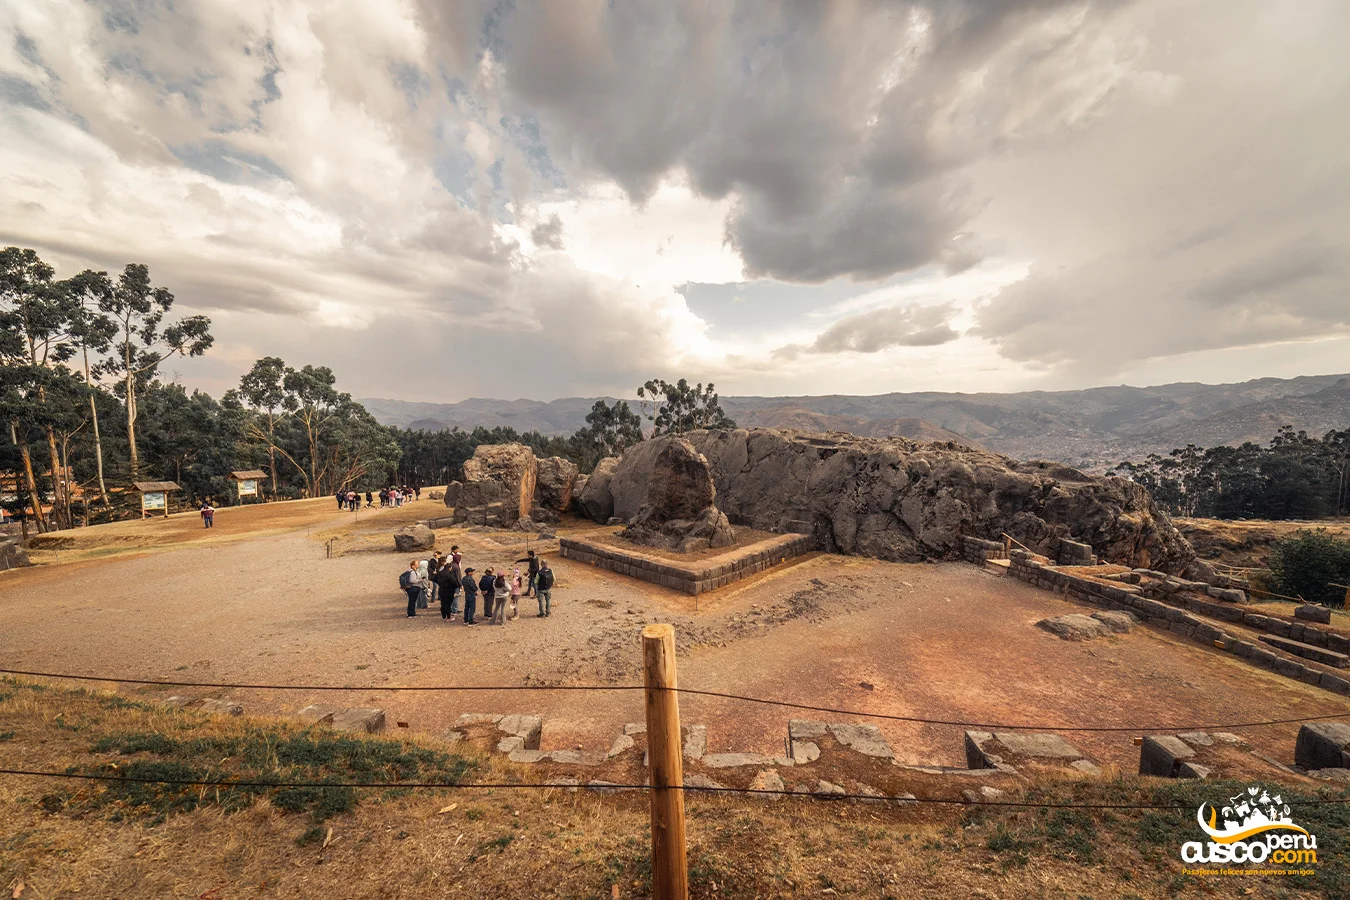 Qenqo Archaeological Site in Cusco. Source: CuscoPeru.com